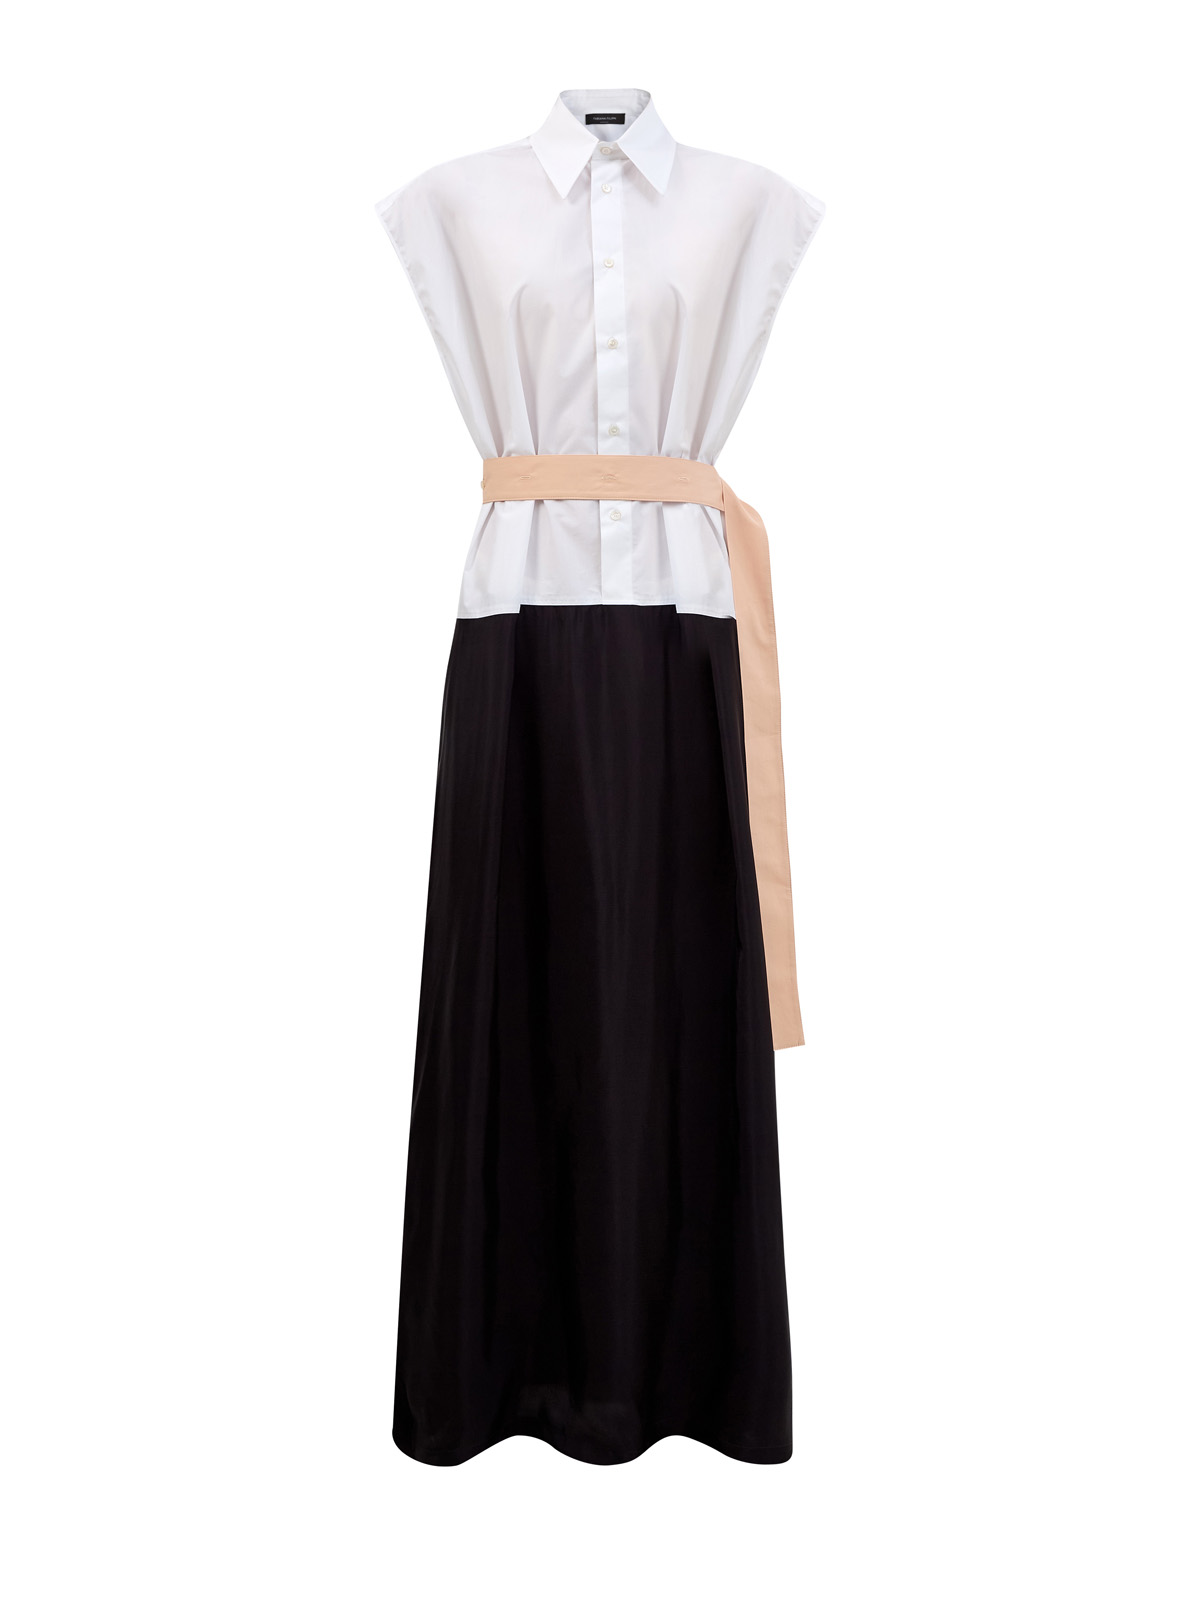 Хлопковое платье-рубашка в стиле colorblock с контрастным поясом FABIANA FILIPPI, цвет мульти, размер 40;42 - фото 1